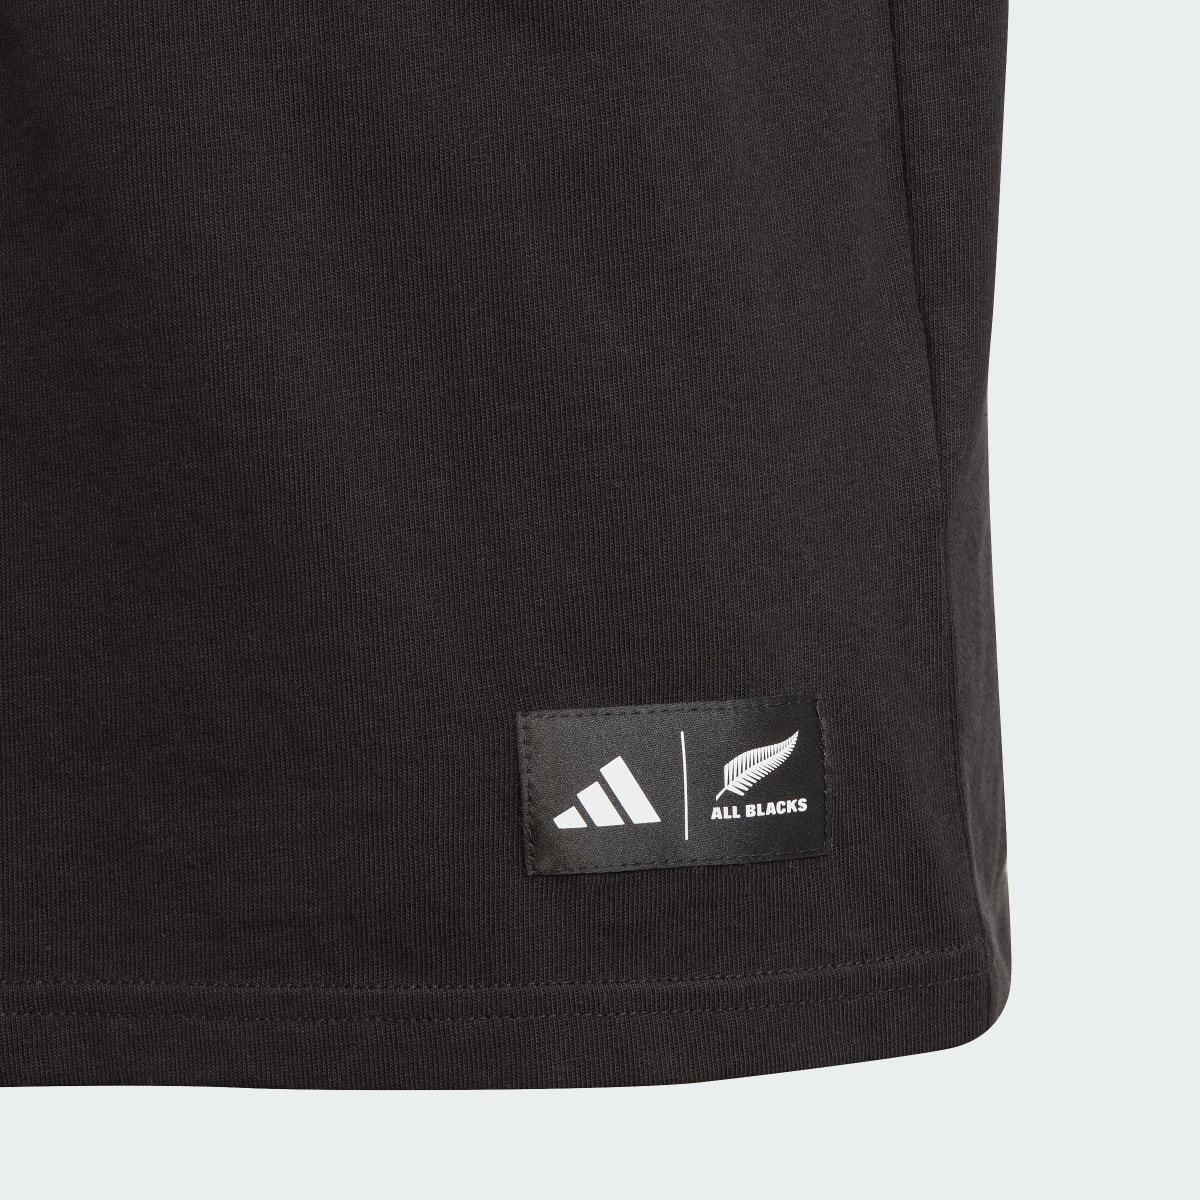 Adidas Camiseta All Blacks Graphic. 4